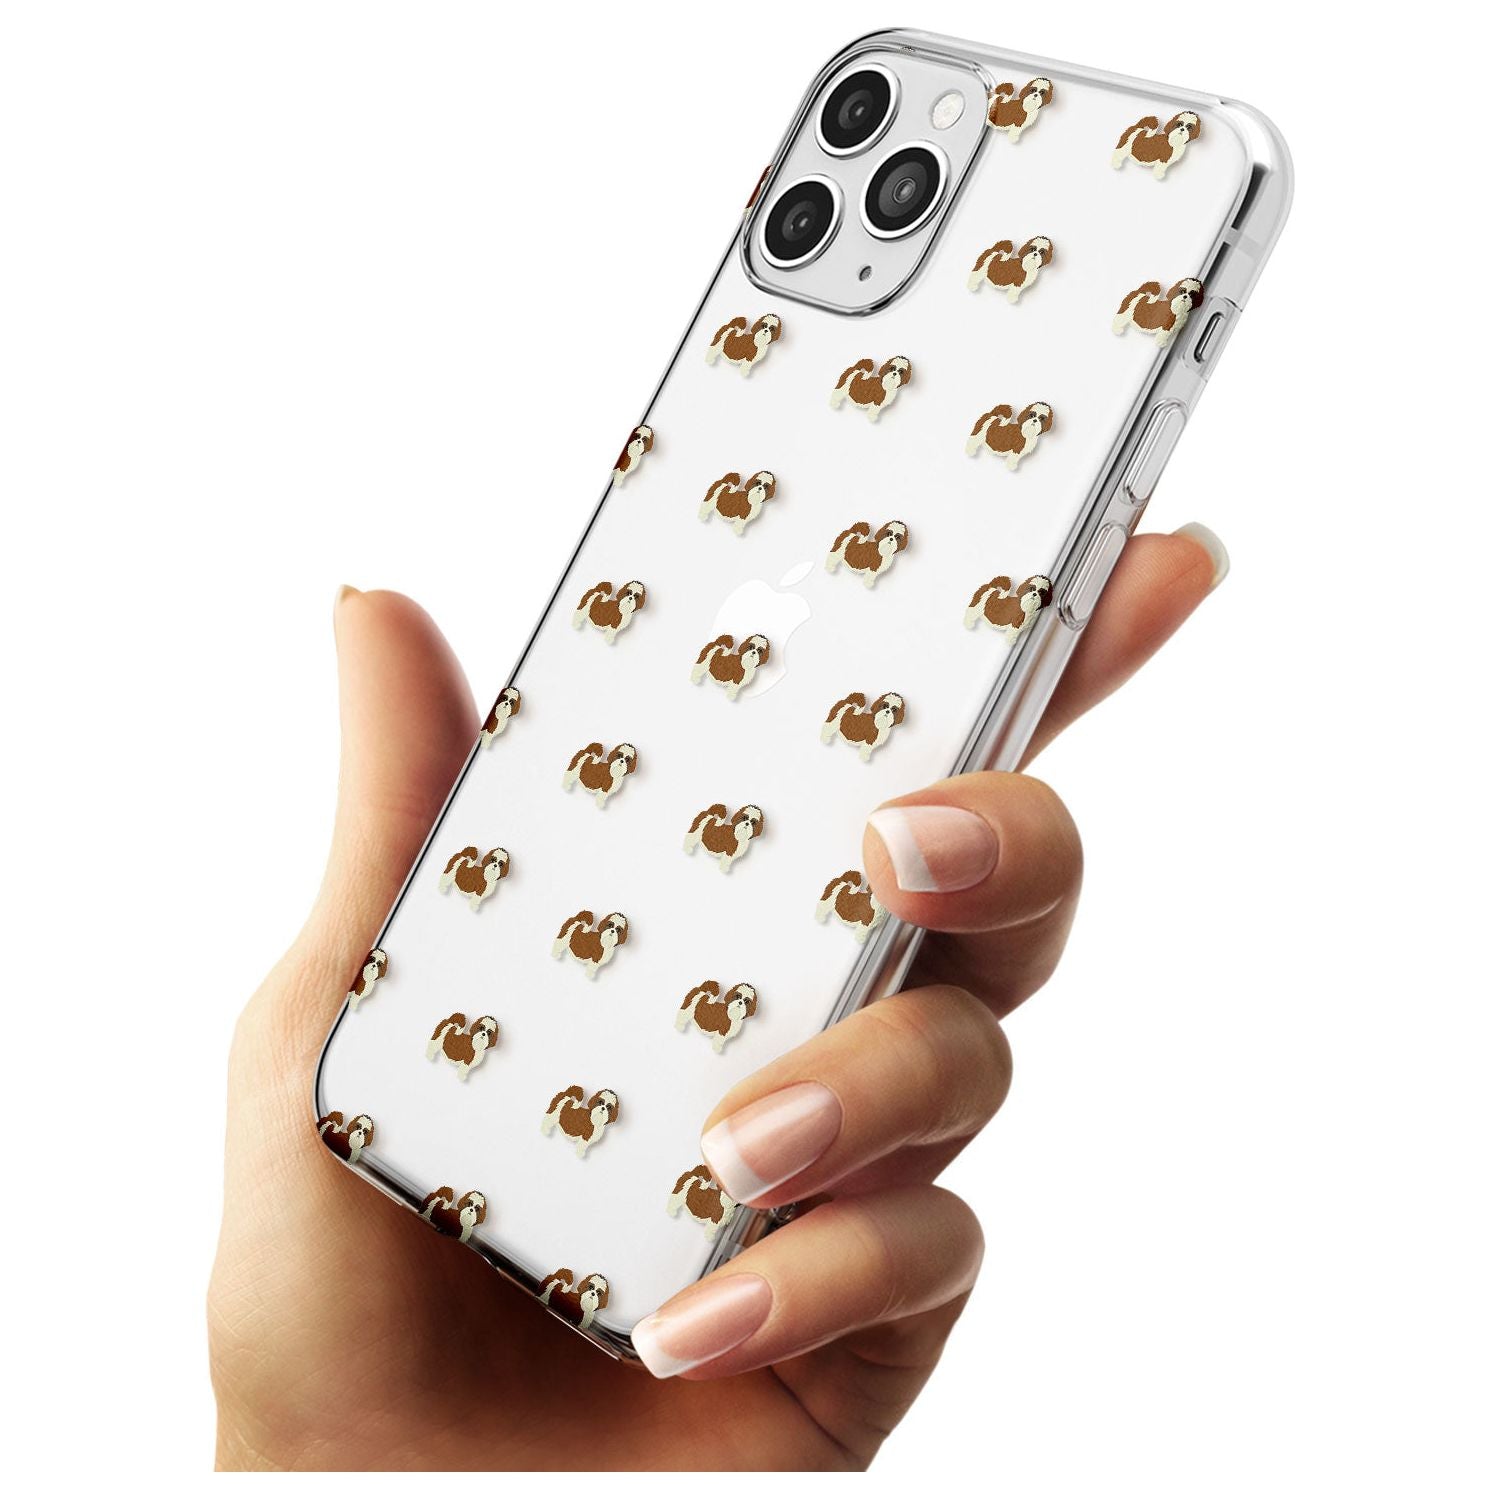 Shih Tzu Dog Pattern Clear Slim TPU Phone Case for iPhone 11 Pro Max